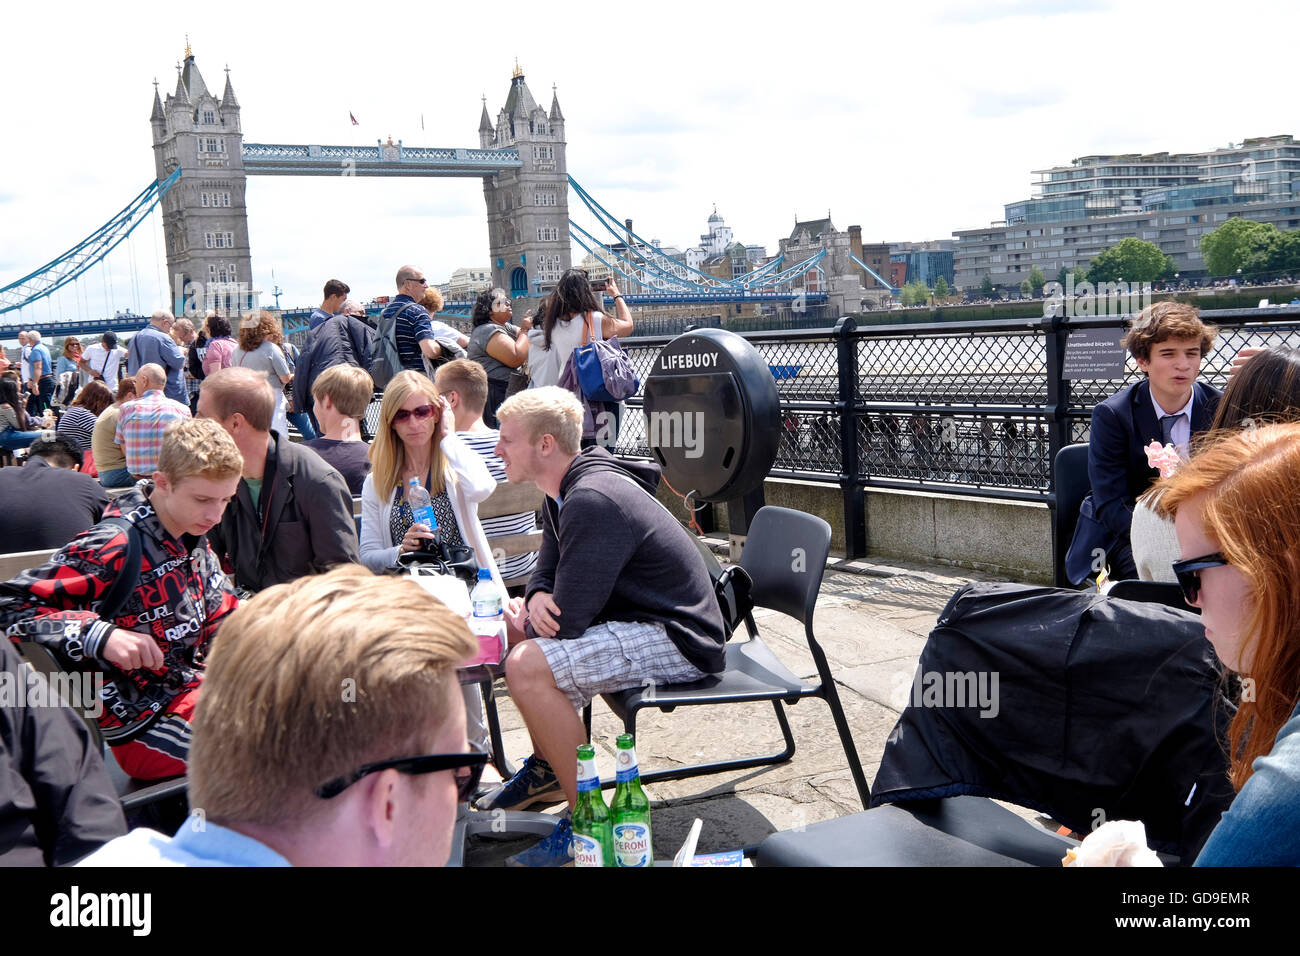 Los turistas tienen el almuerzo en un restaurante al aire libre en el Victoria Embankment a lo largo de río Támesis con el Tower Bridge de Londres, hitos en el fondo. Foto de stock